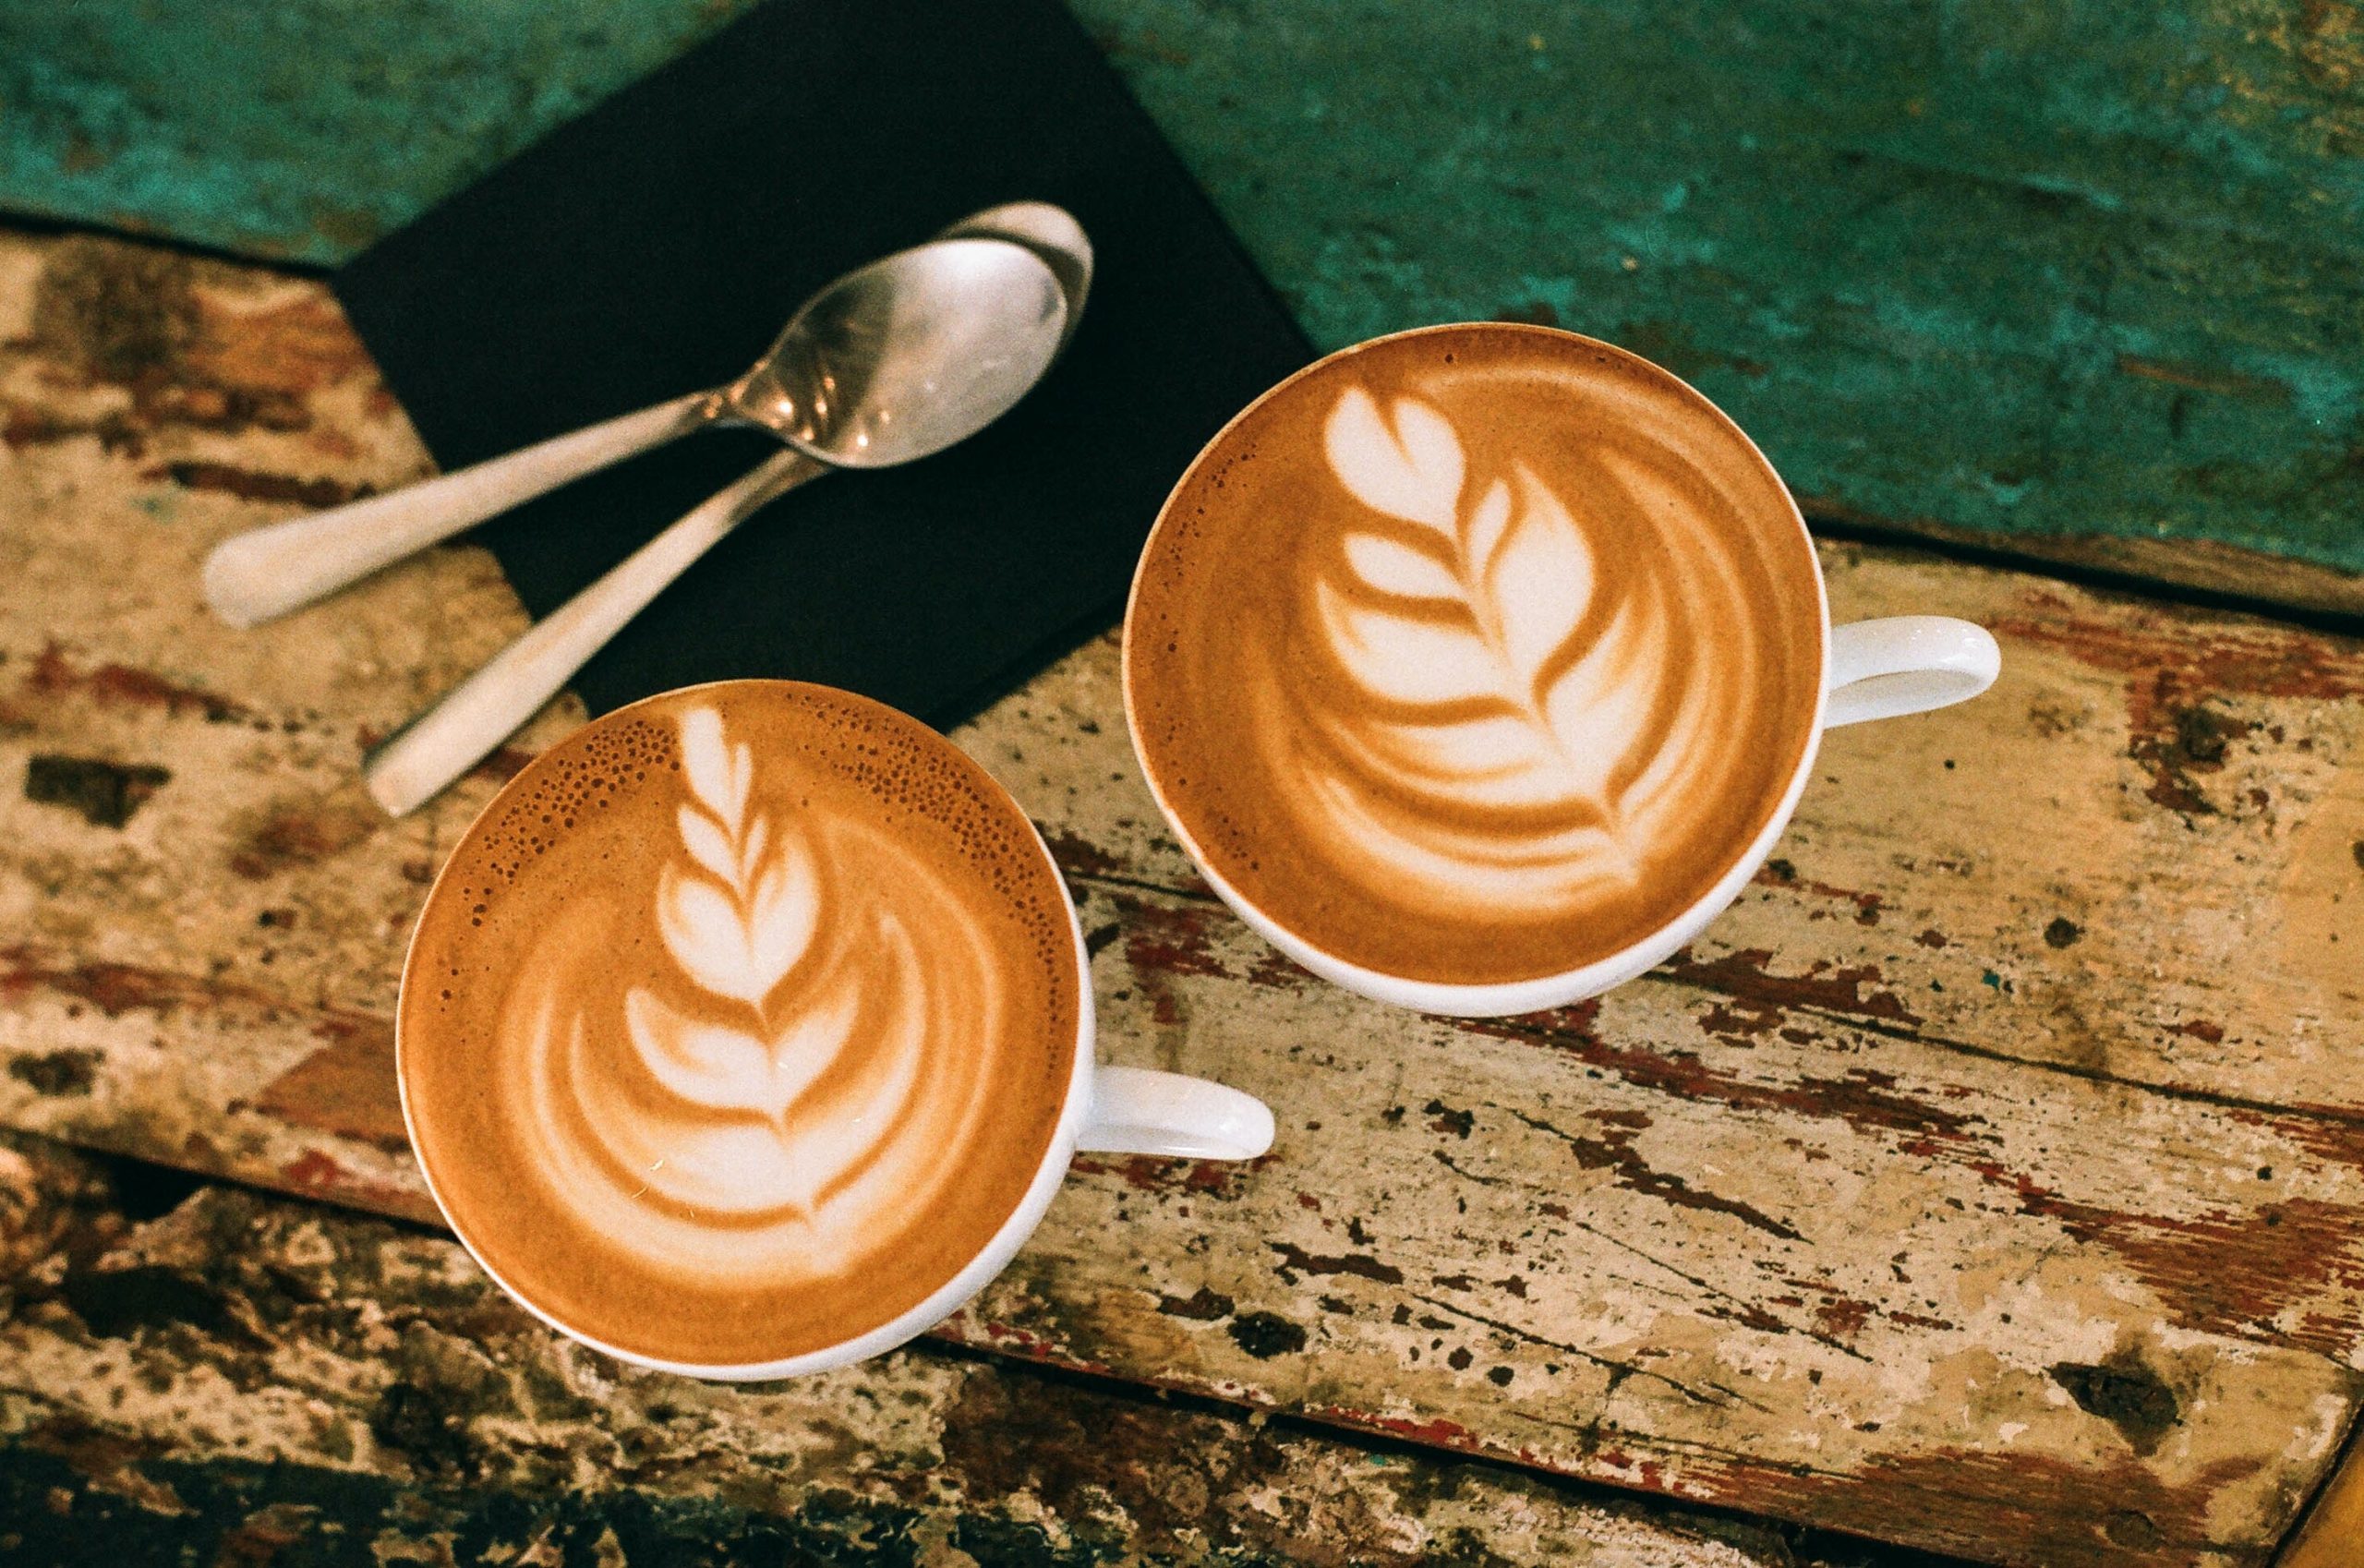 كيفية تناول القهوة بشكل صحي ومعتدل والاستفادة من فوائدها الصحية